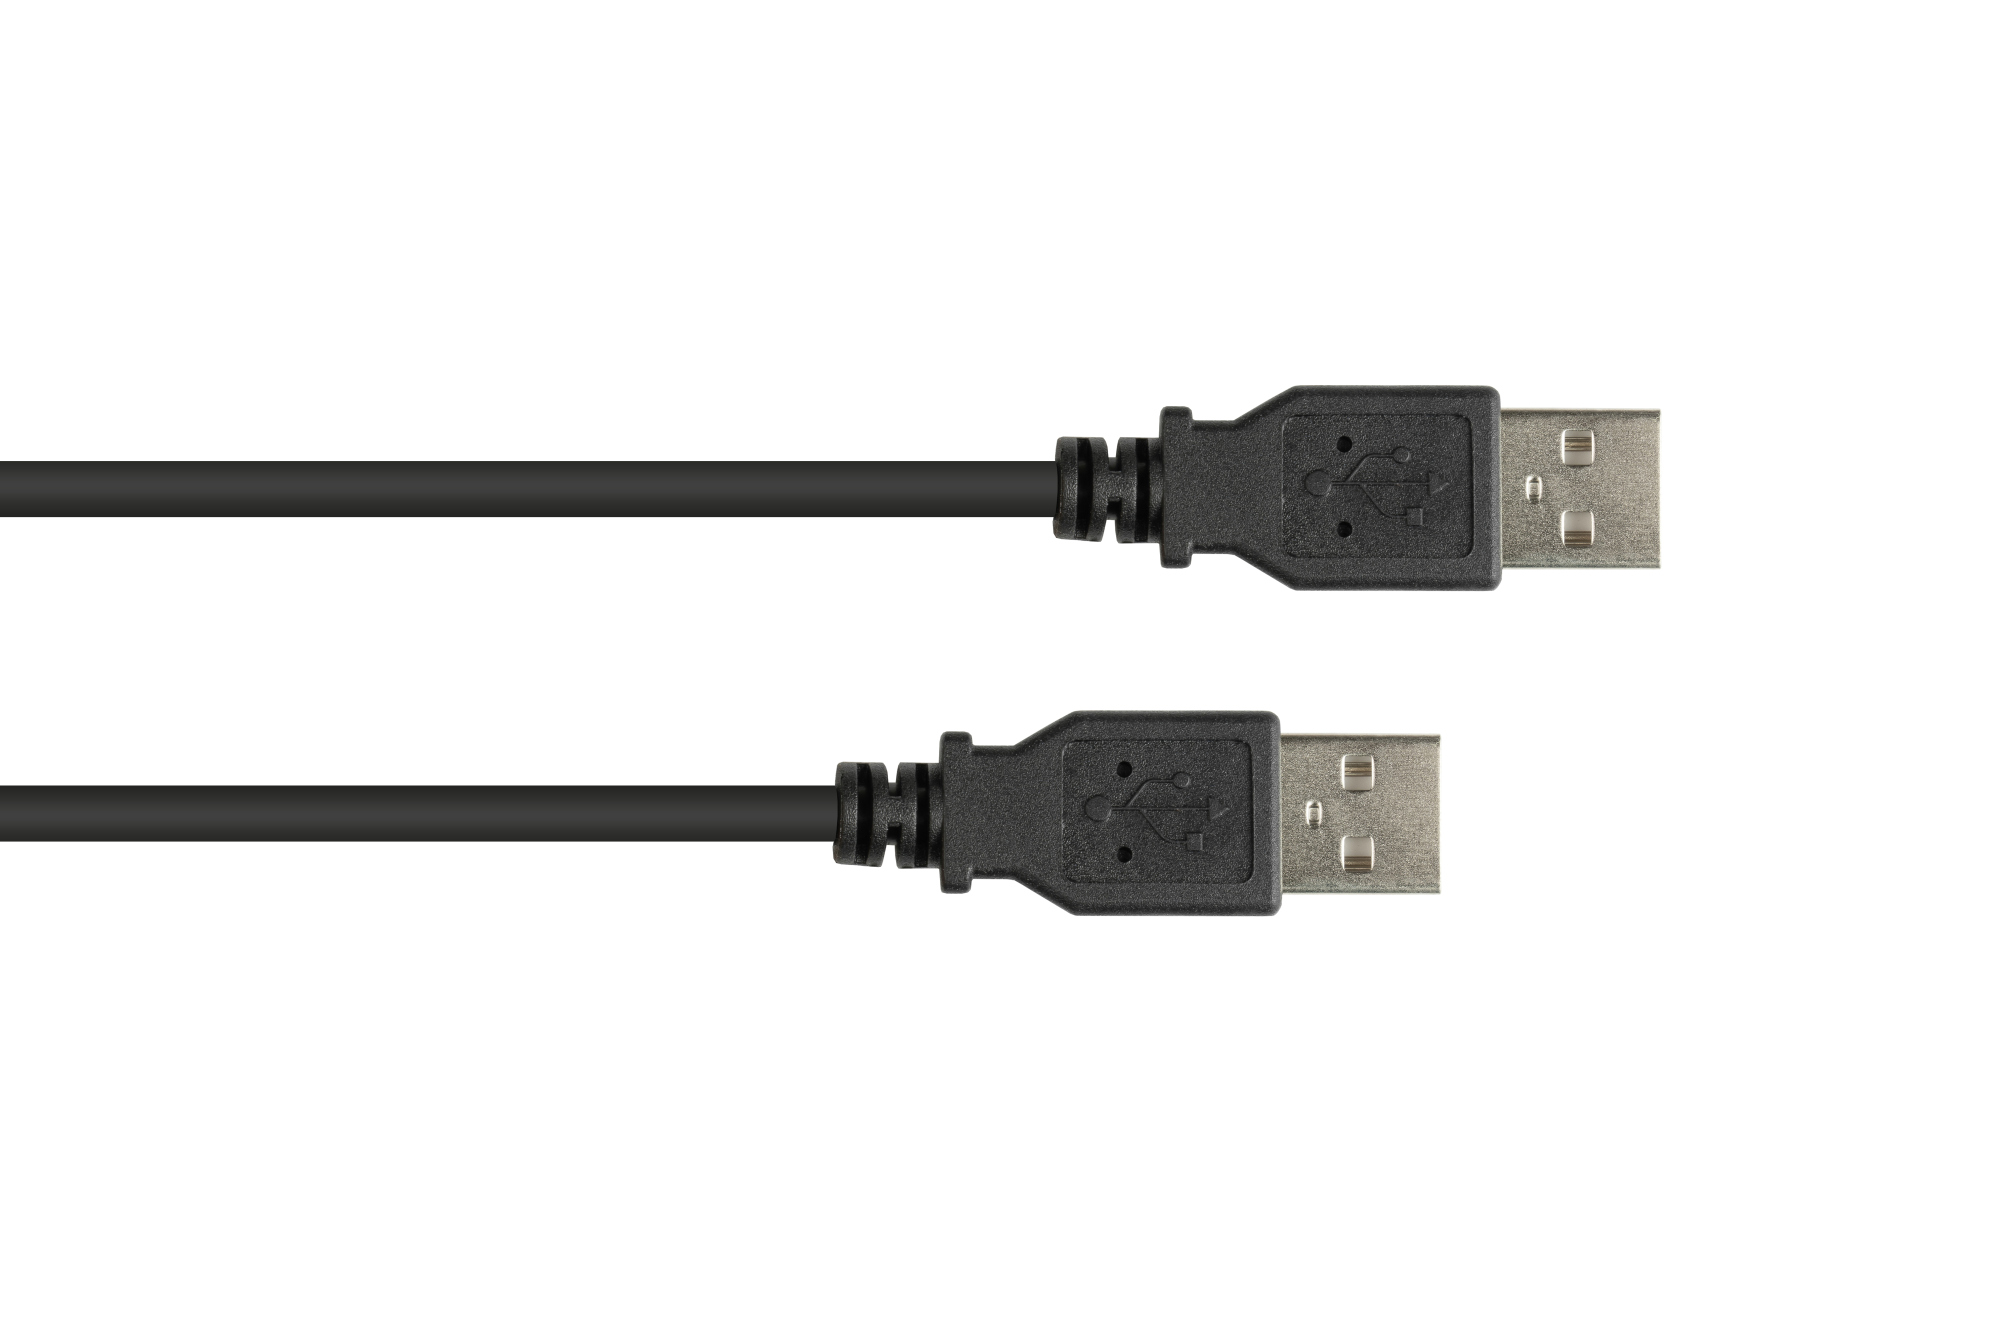 Anschlusskabel USB 2.0 Stecker A an Stecker A, schwarz, 3m, Good Connections®